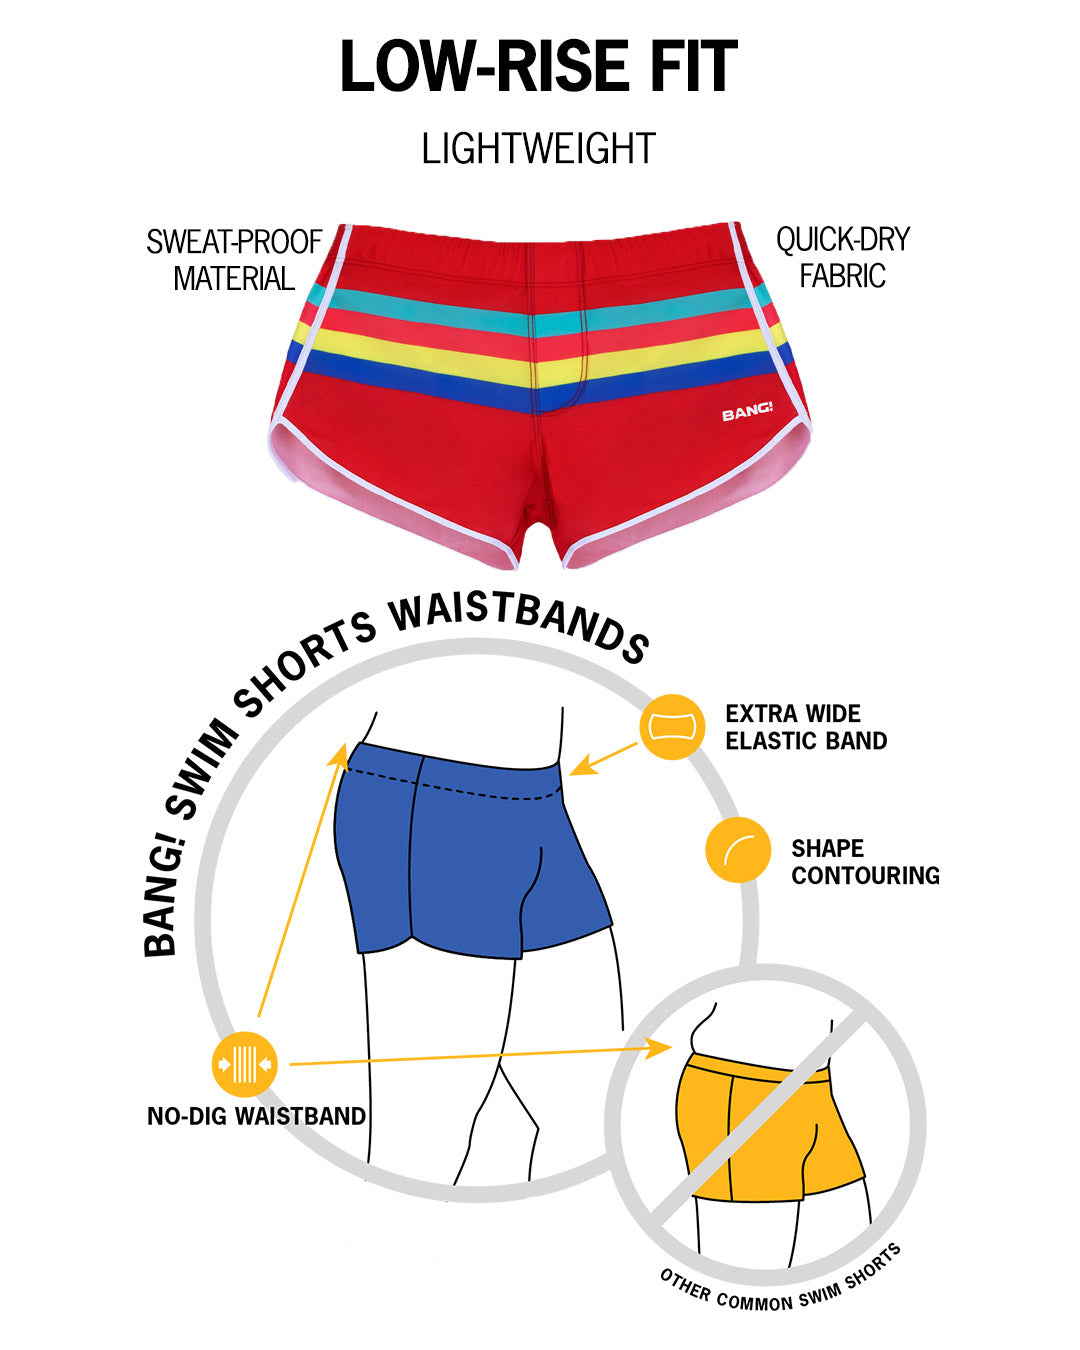 BANG! All Shorts Comparison